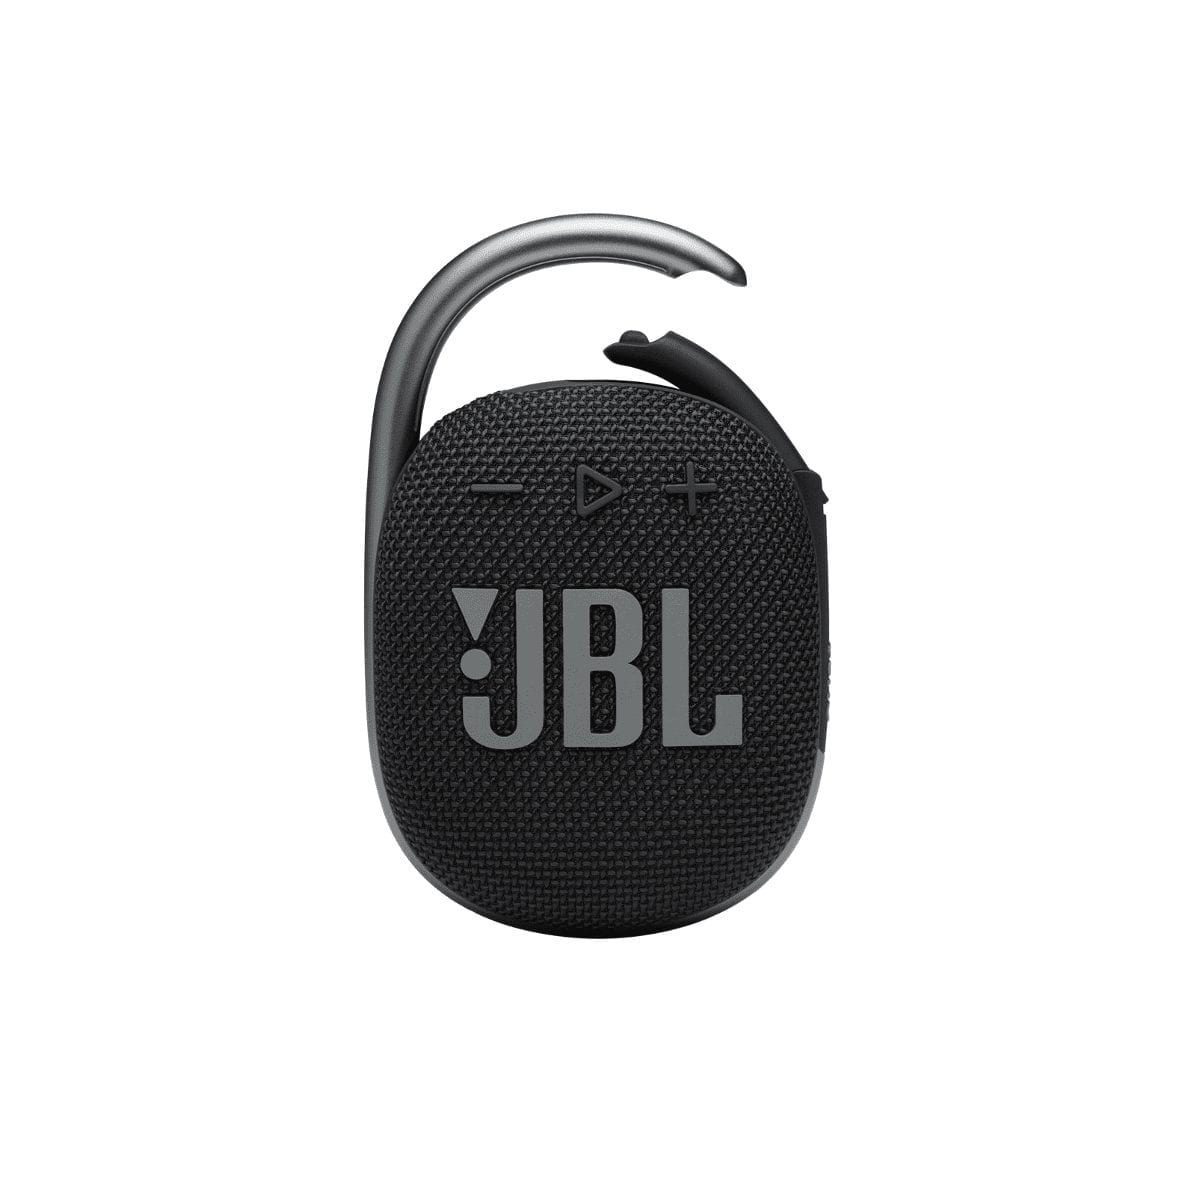 Компактные портативные колонки JBL Clip 4 Black компактные портативные колонки jbl clip 4 black